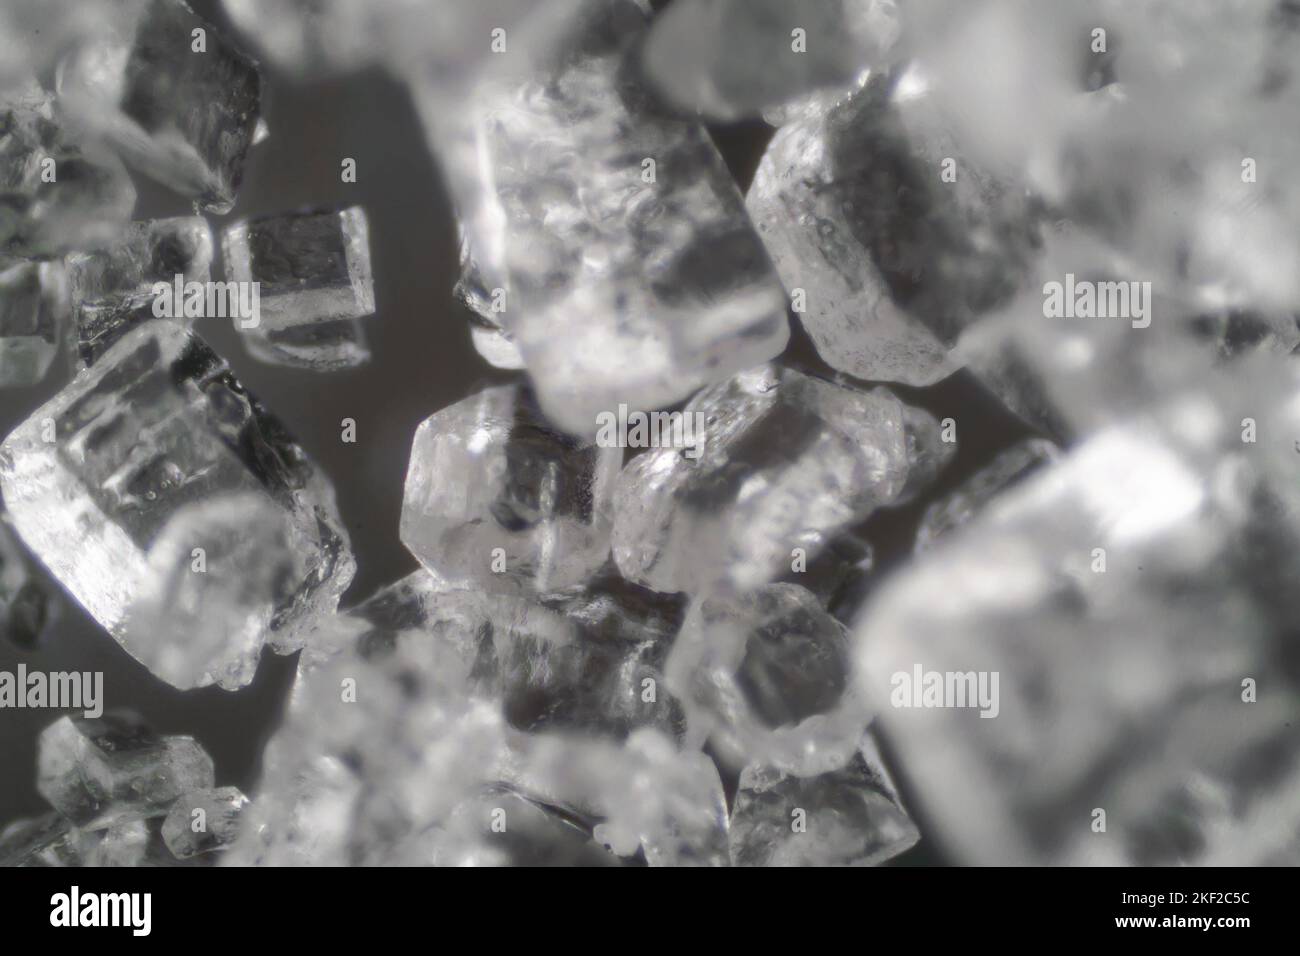 Mondo microscopico. I cristalli di sale. Foto Stock